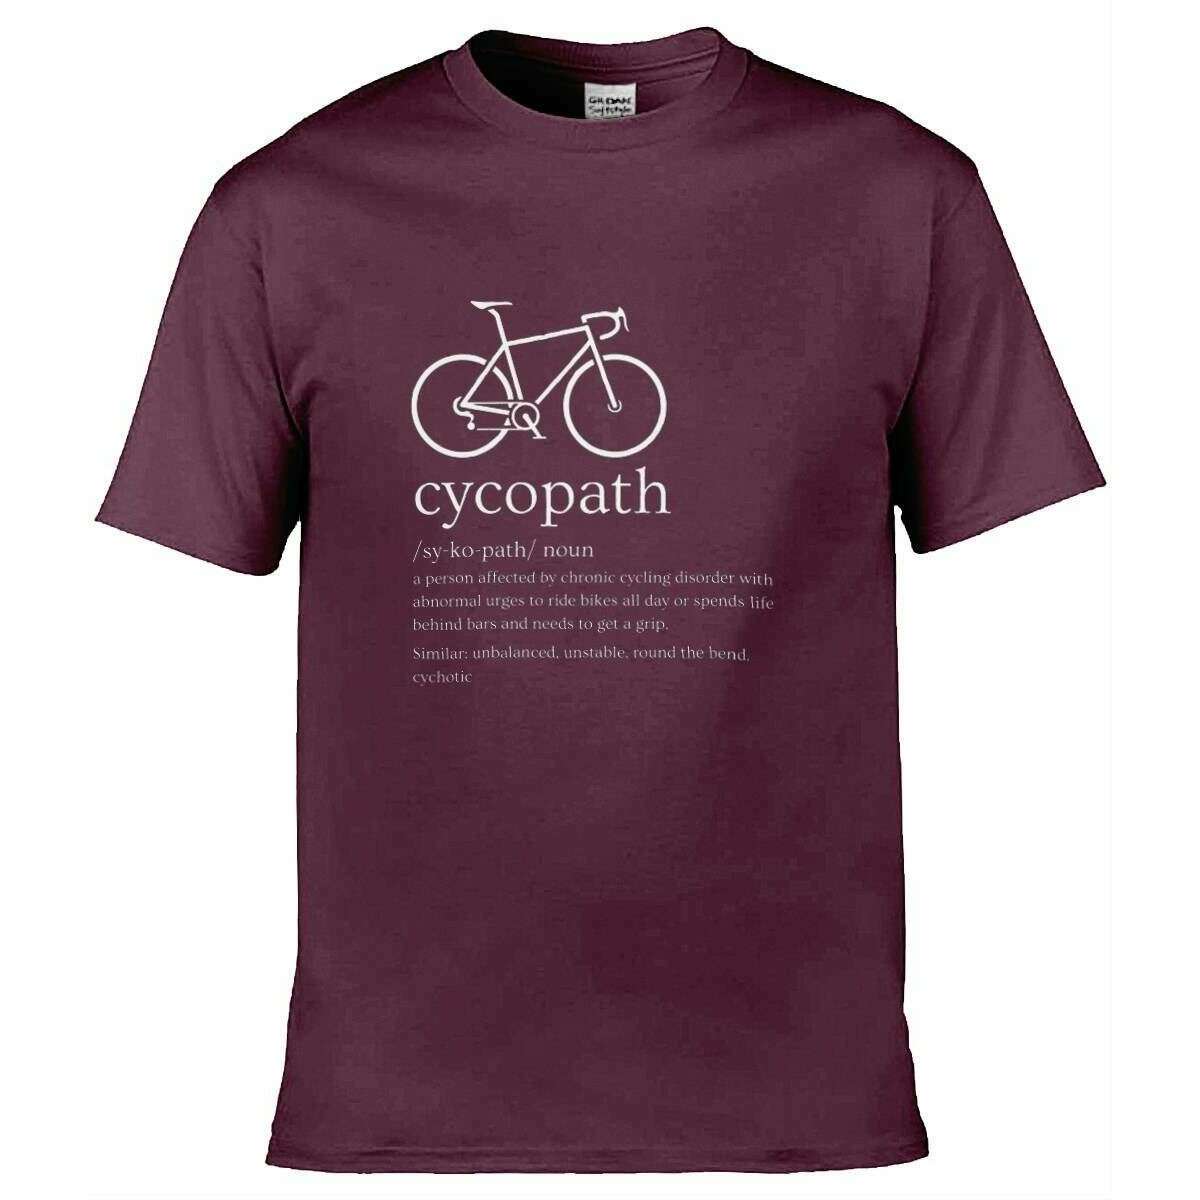 Teemarkable! Cycopath Cycling T-Shirt